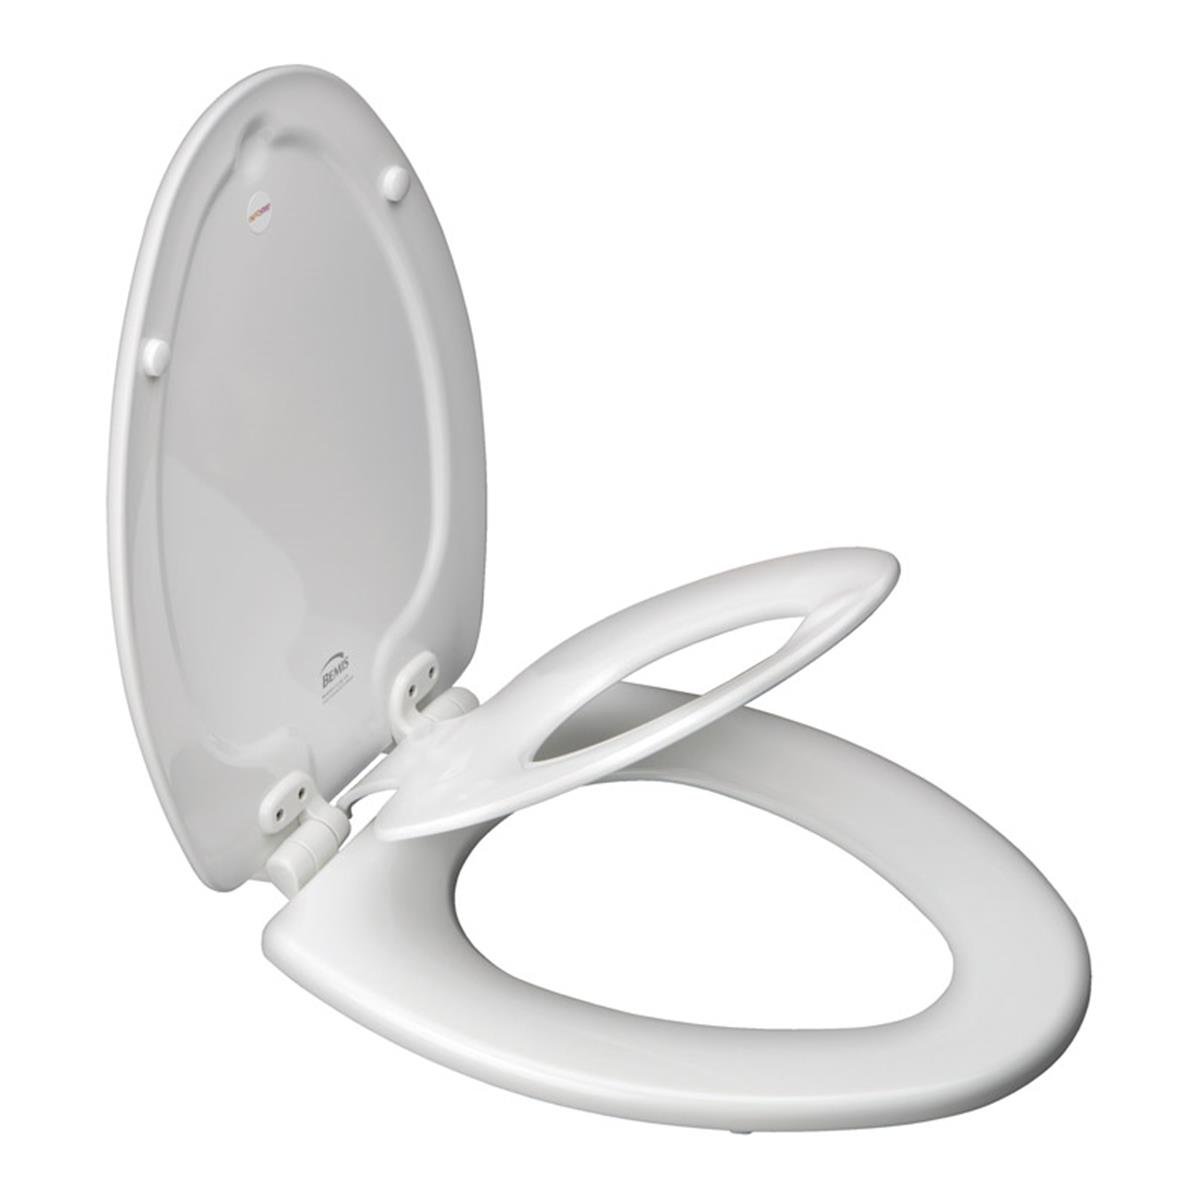 183slowa-000 Nextstep Elongated Toilet Seat White